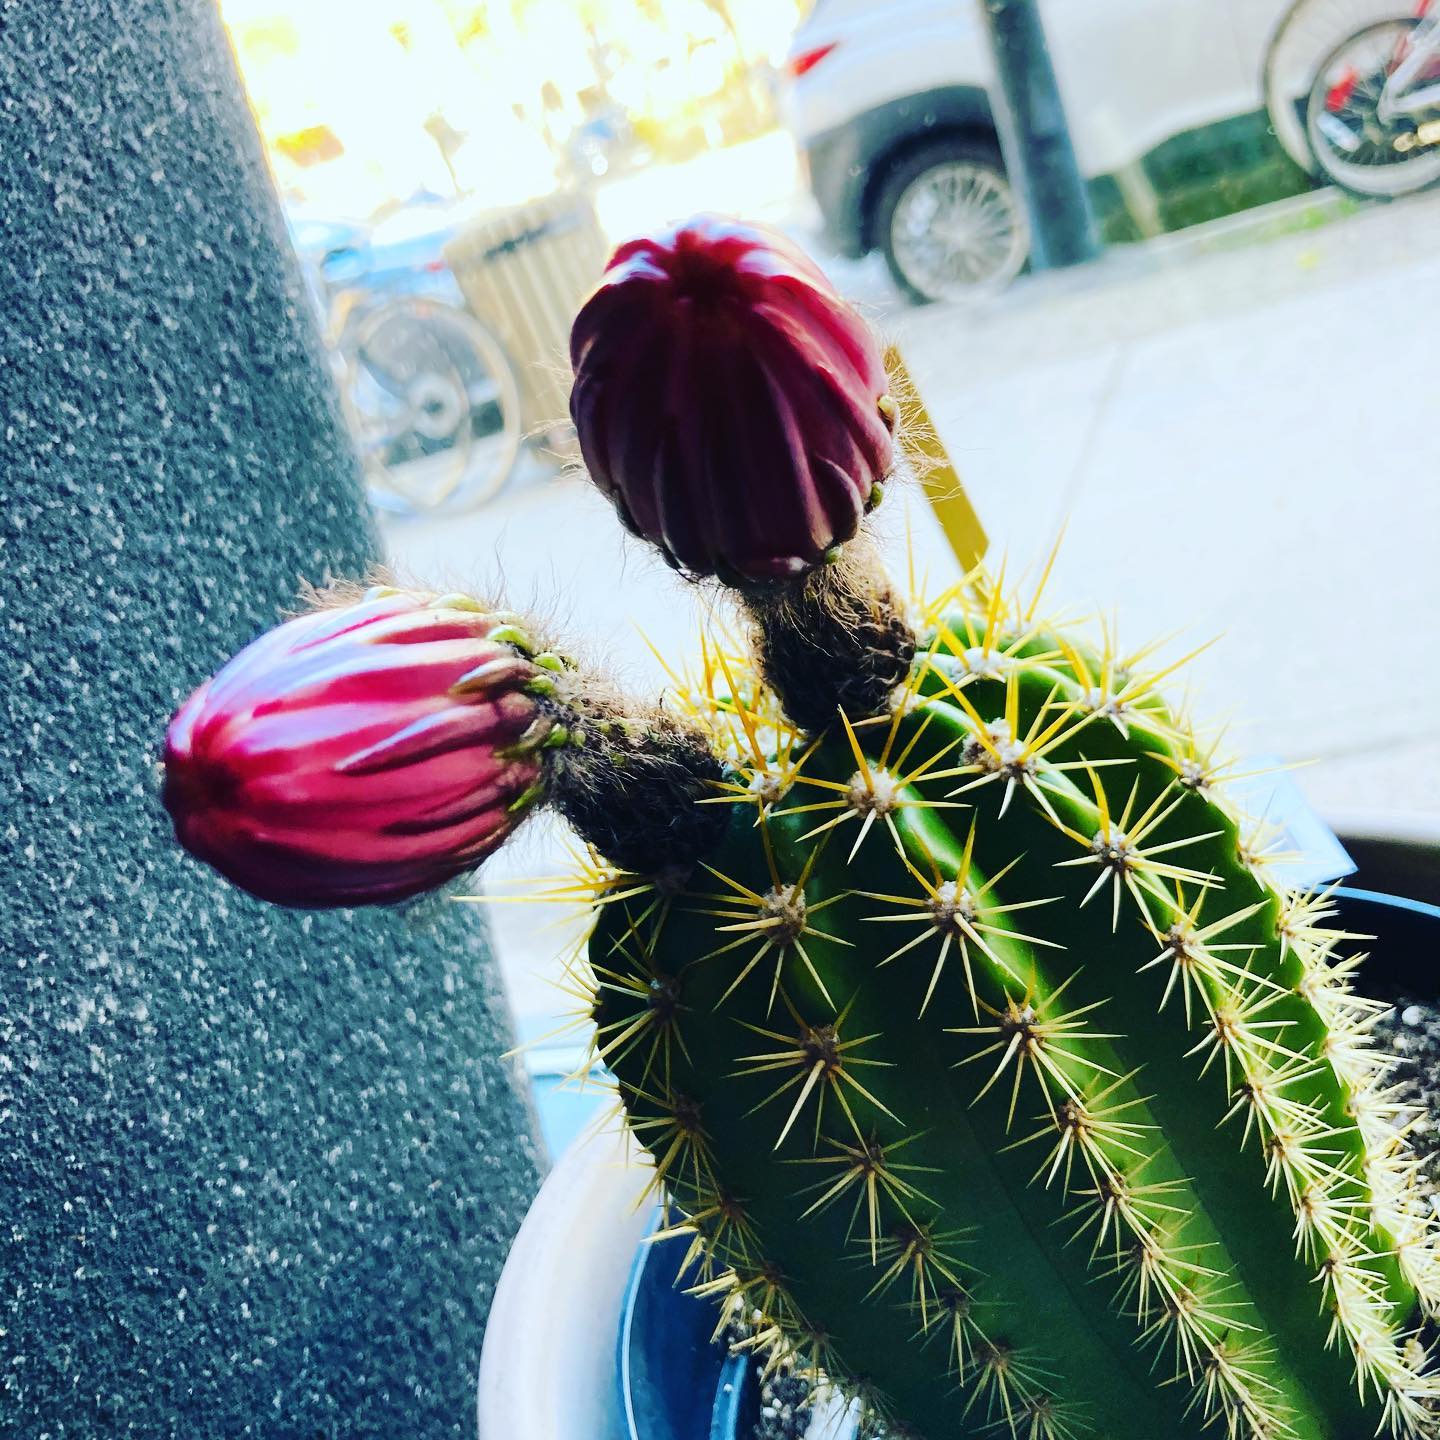 D’ici demain il devrait ouvrir👀😍😍😍#cactus #montreal #plantetropicale #fleuriste #fleuristemontreal #marsolais #fleurs